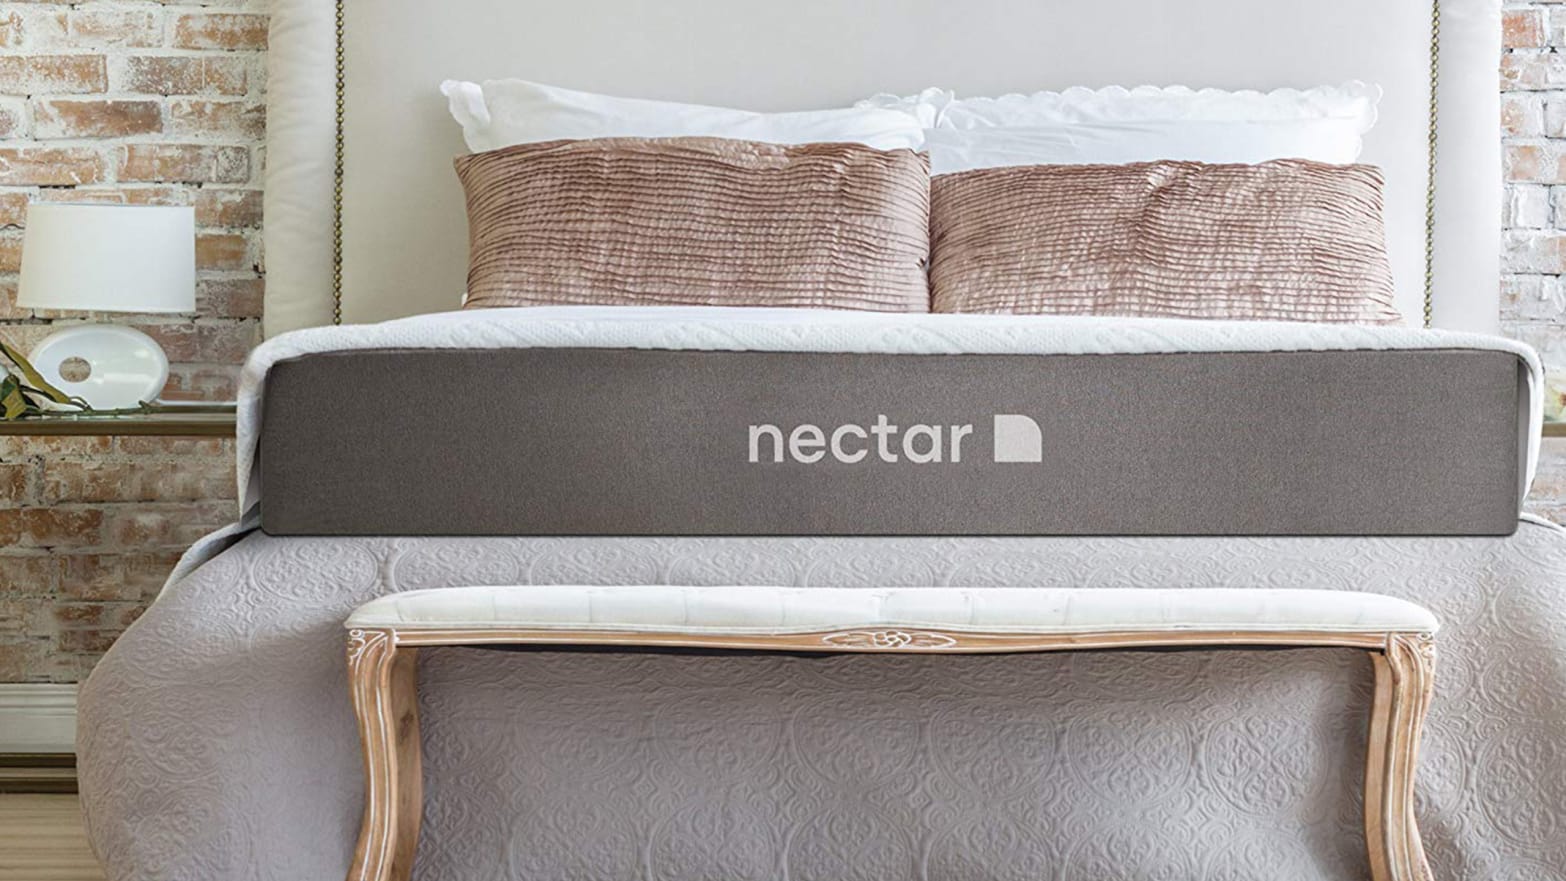 nectar queen mattress for sale